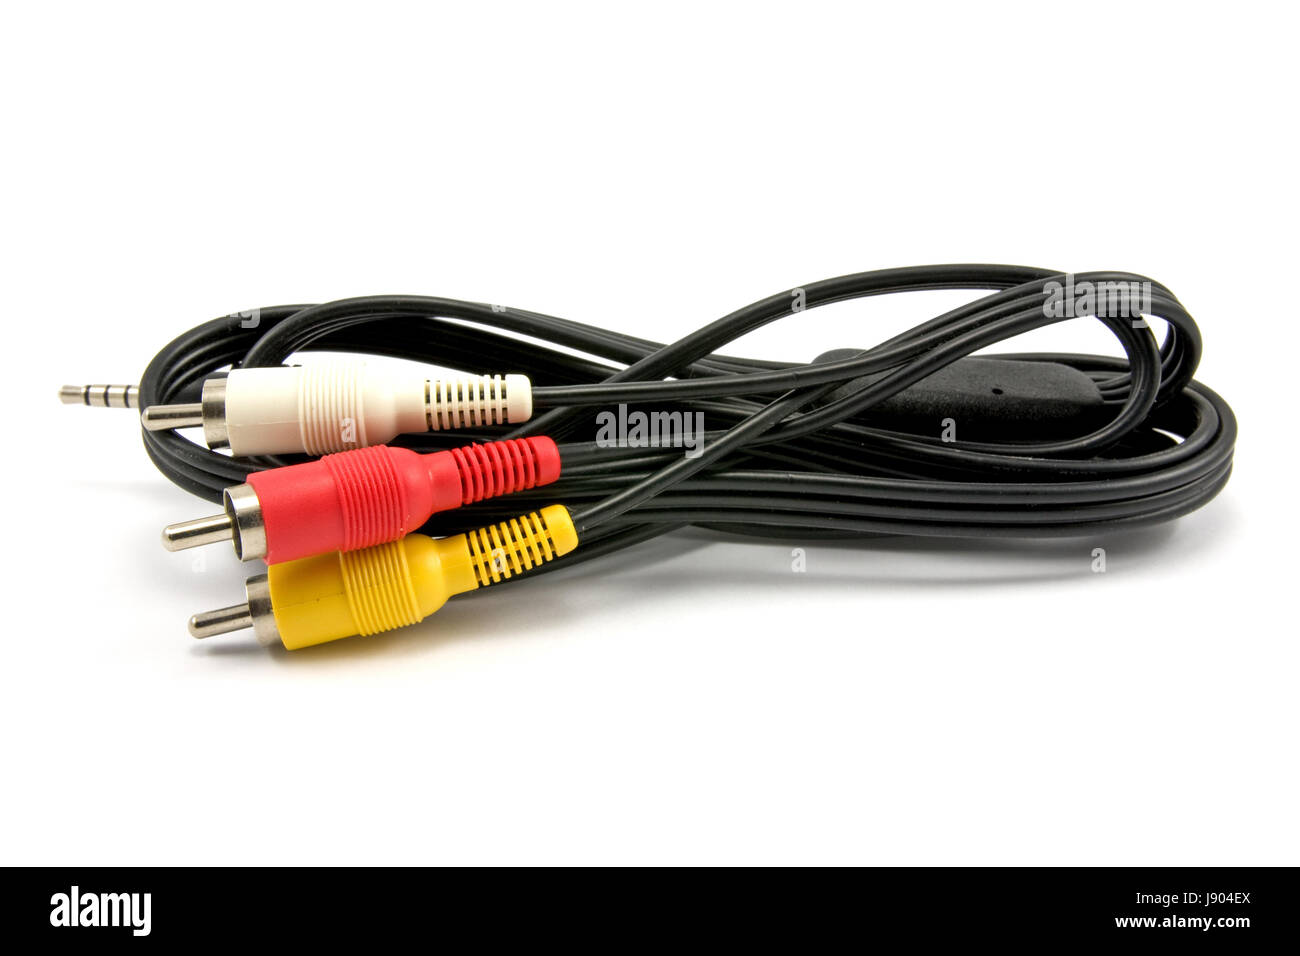 ADAPTADOR DE HDMI A RCA – Distribuidora Wonter Electronic